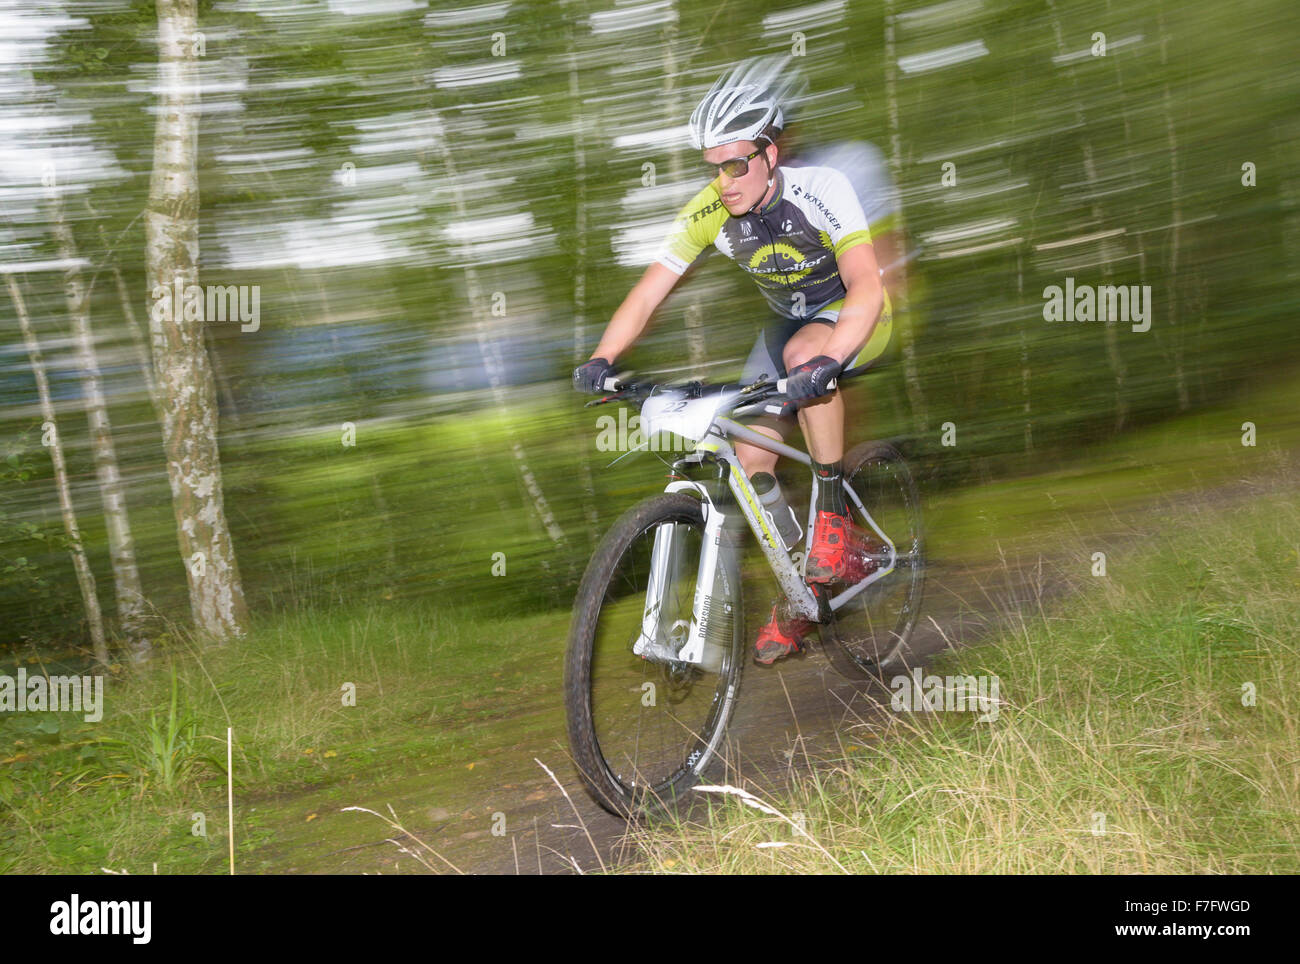 Un vélo de montagne à travers une forêt lors d'une compétition vtt Banque D'Images